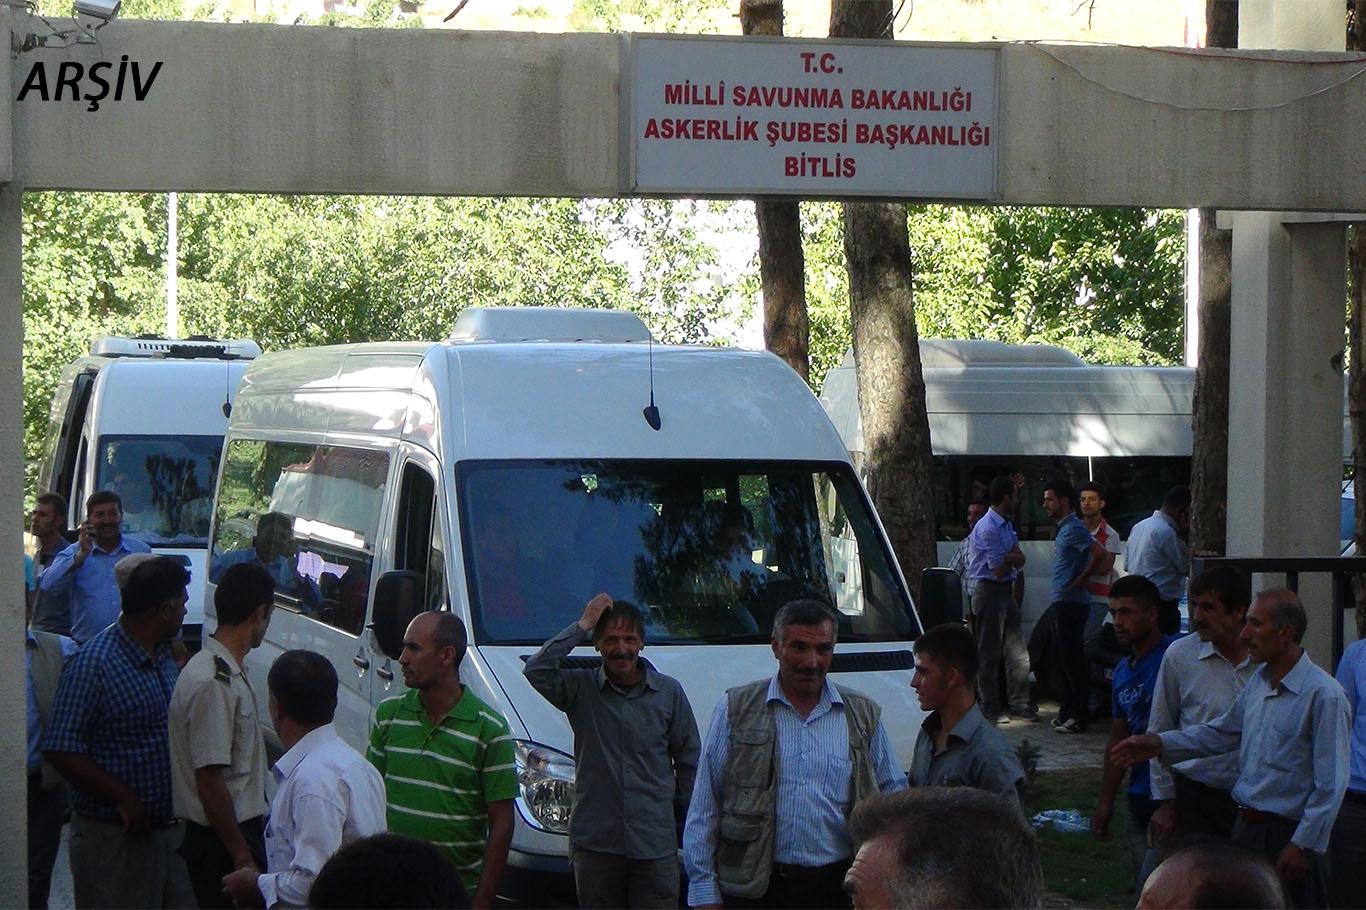 Bitlis’te Covid-19 salgını nedeniyle asker uğurlamasına kısıtlama getirildi